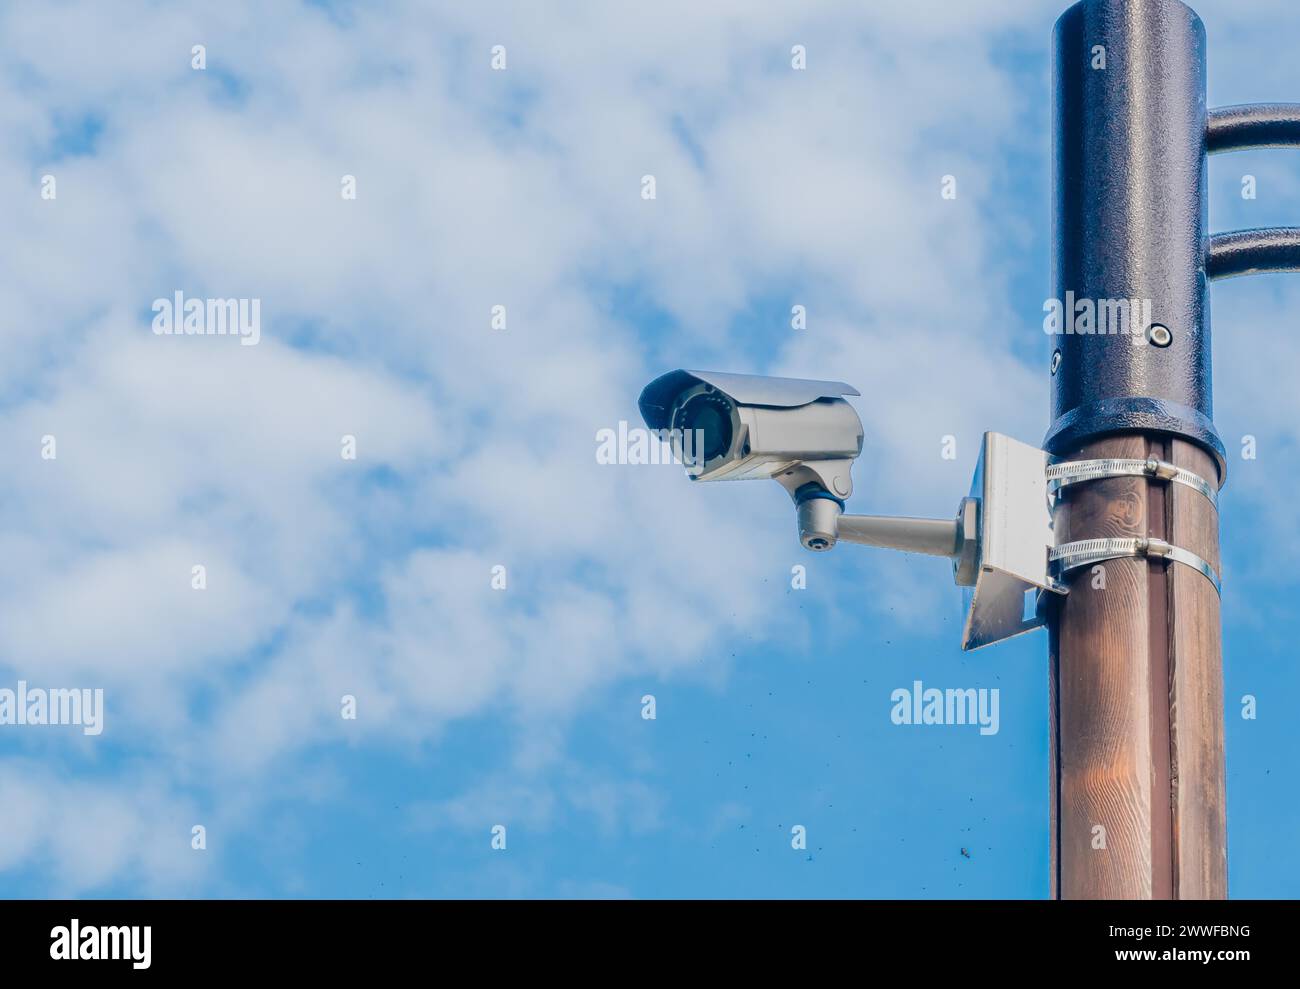 Cámara de vigilancia montada en poste de luz de metal con cielo azul y nubes blancas hinchadas en el fondo en Corea del Sur Foto de stock